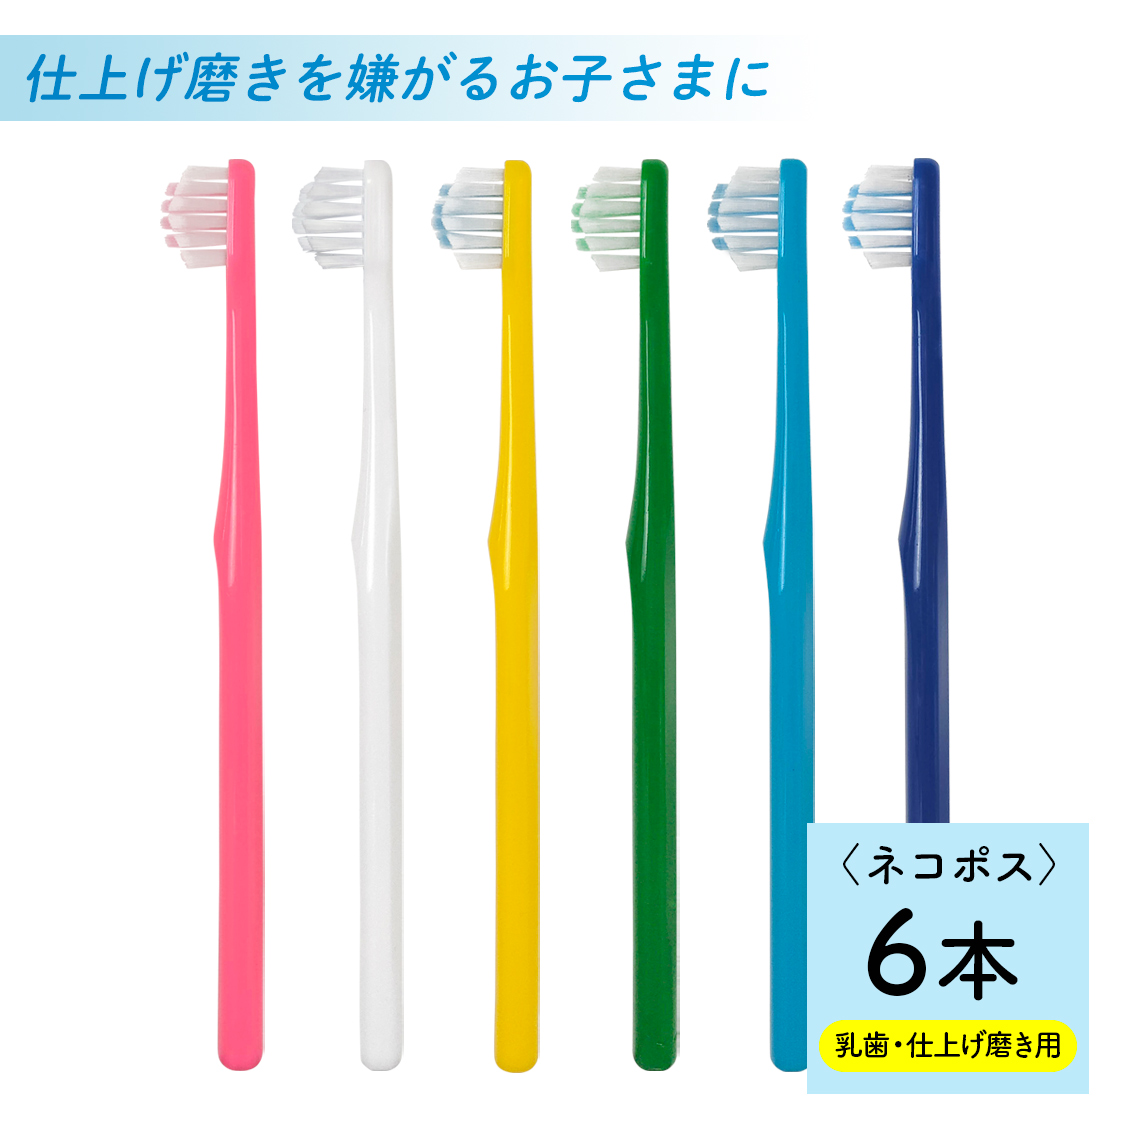 逆輸入 奇跡の歯ブラシ こども用 2本セット 色選べます 本数変更も可能